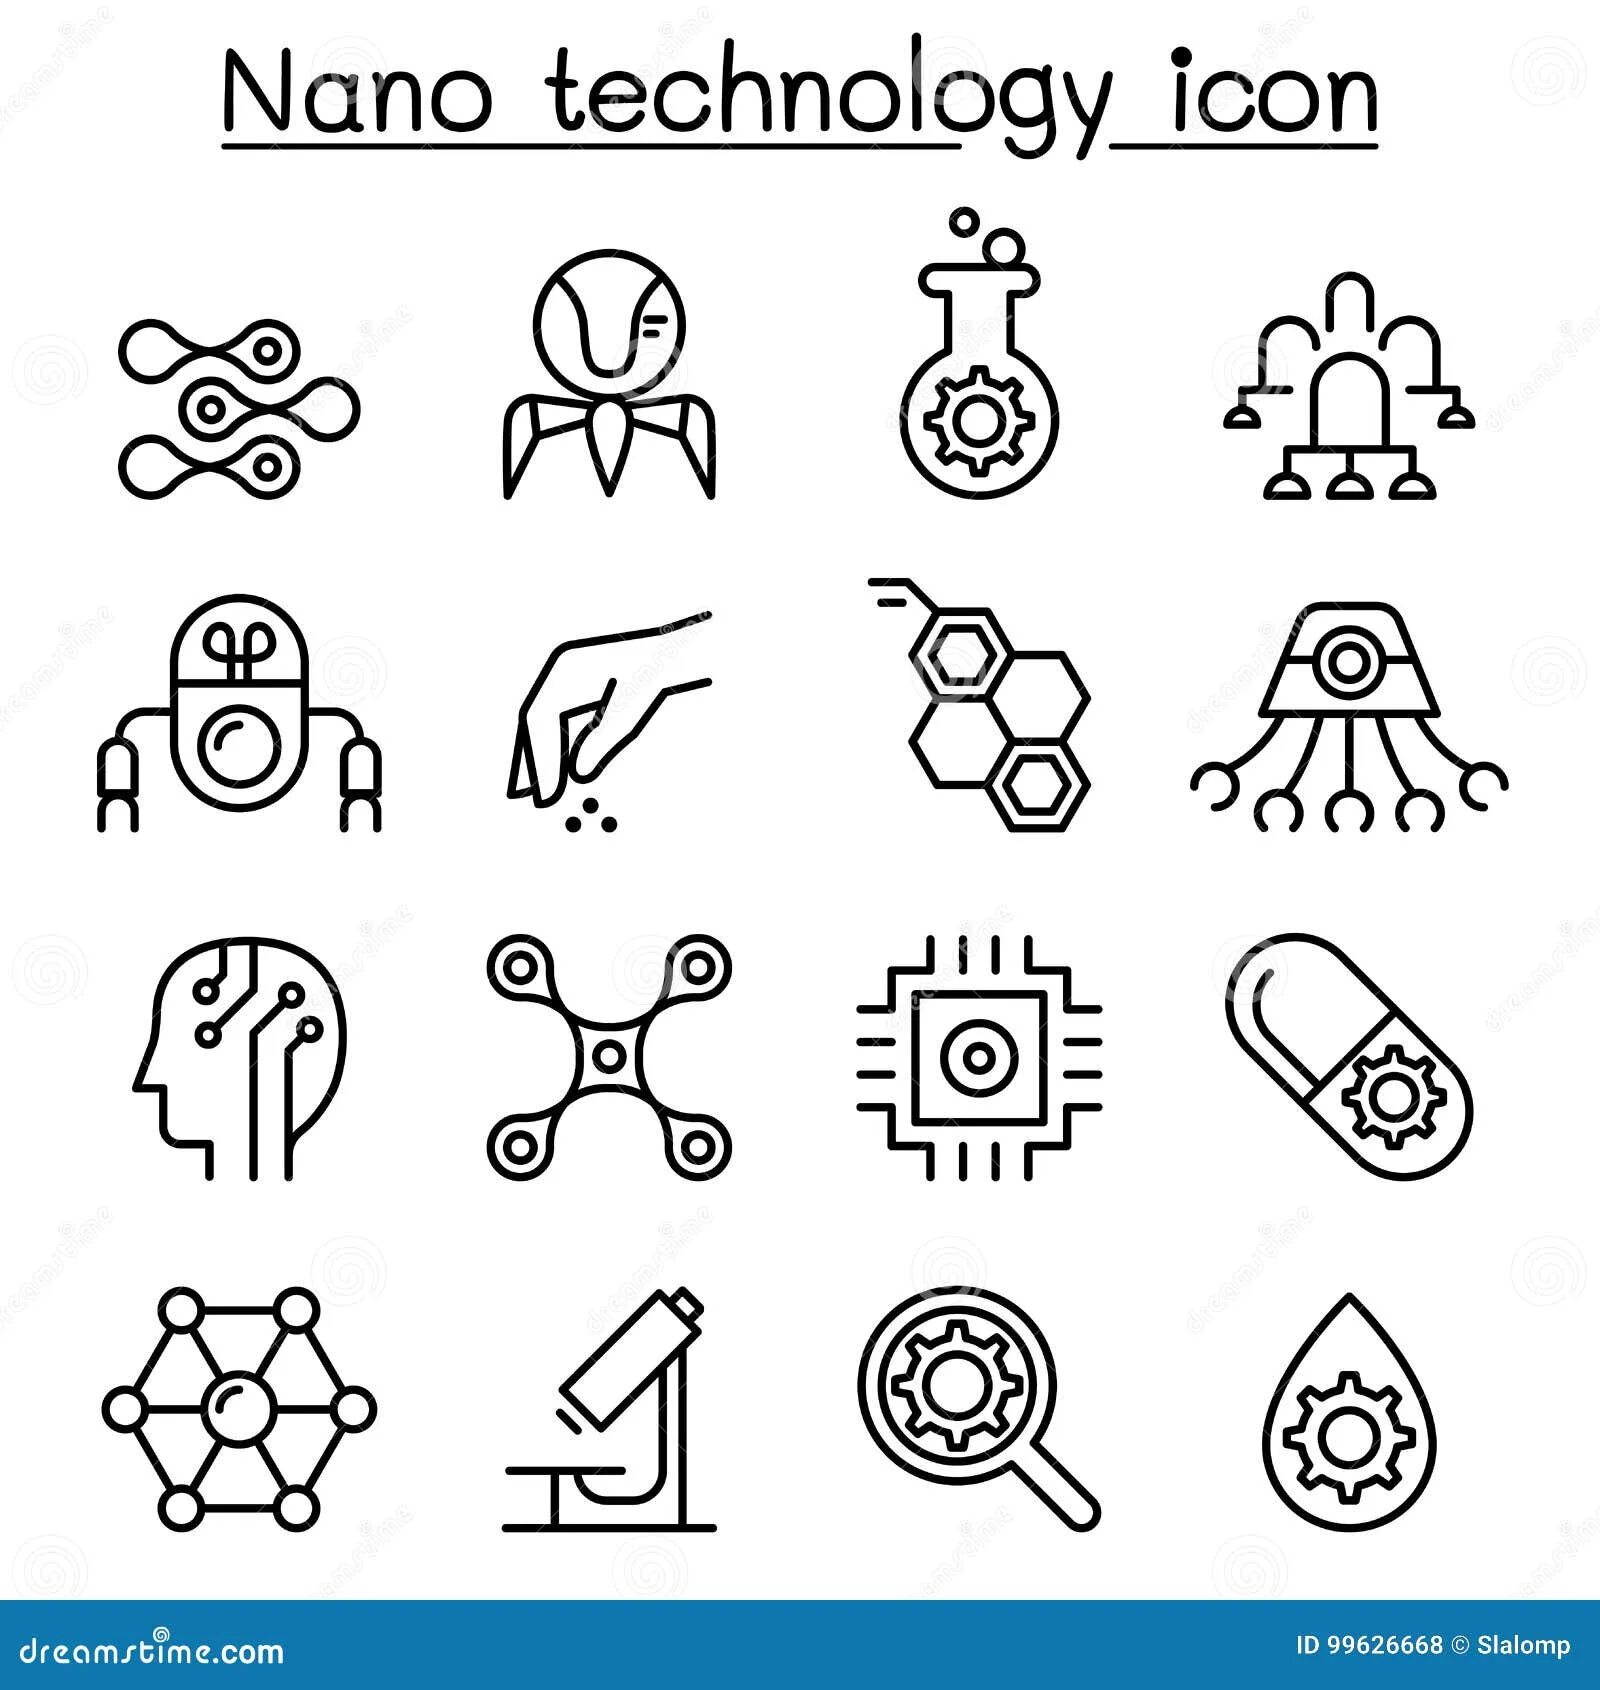 Icon nano. Символ нанотехнологий. Нанотехнологии иконка. Нано символ. Значки наноиндустрии.